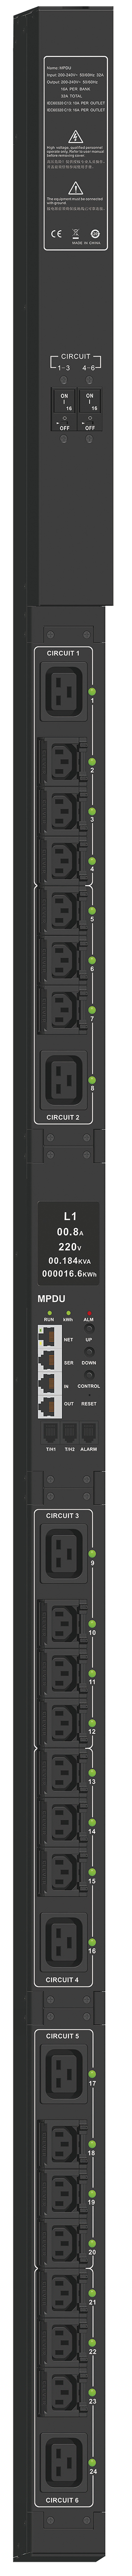 ITK CONTROL PDU с мониторингом и управлением PV1312 1Ф 32А 18С13 6С19 кабель 3м IEC60309